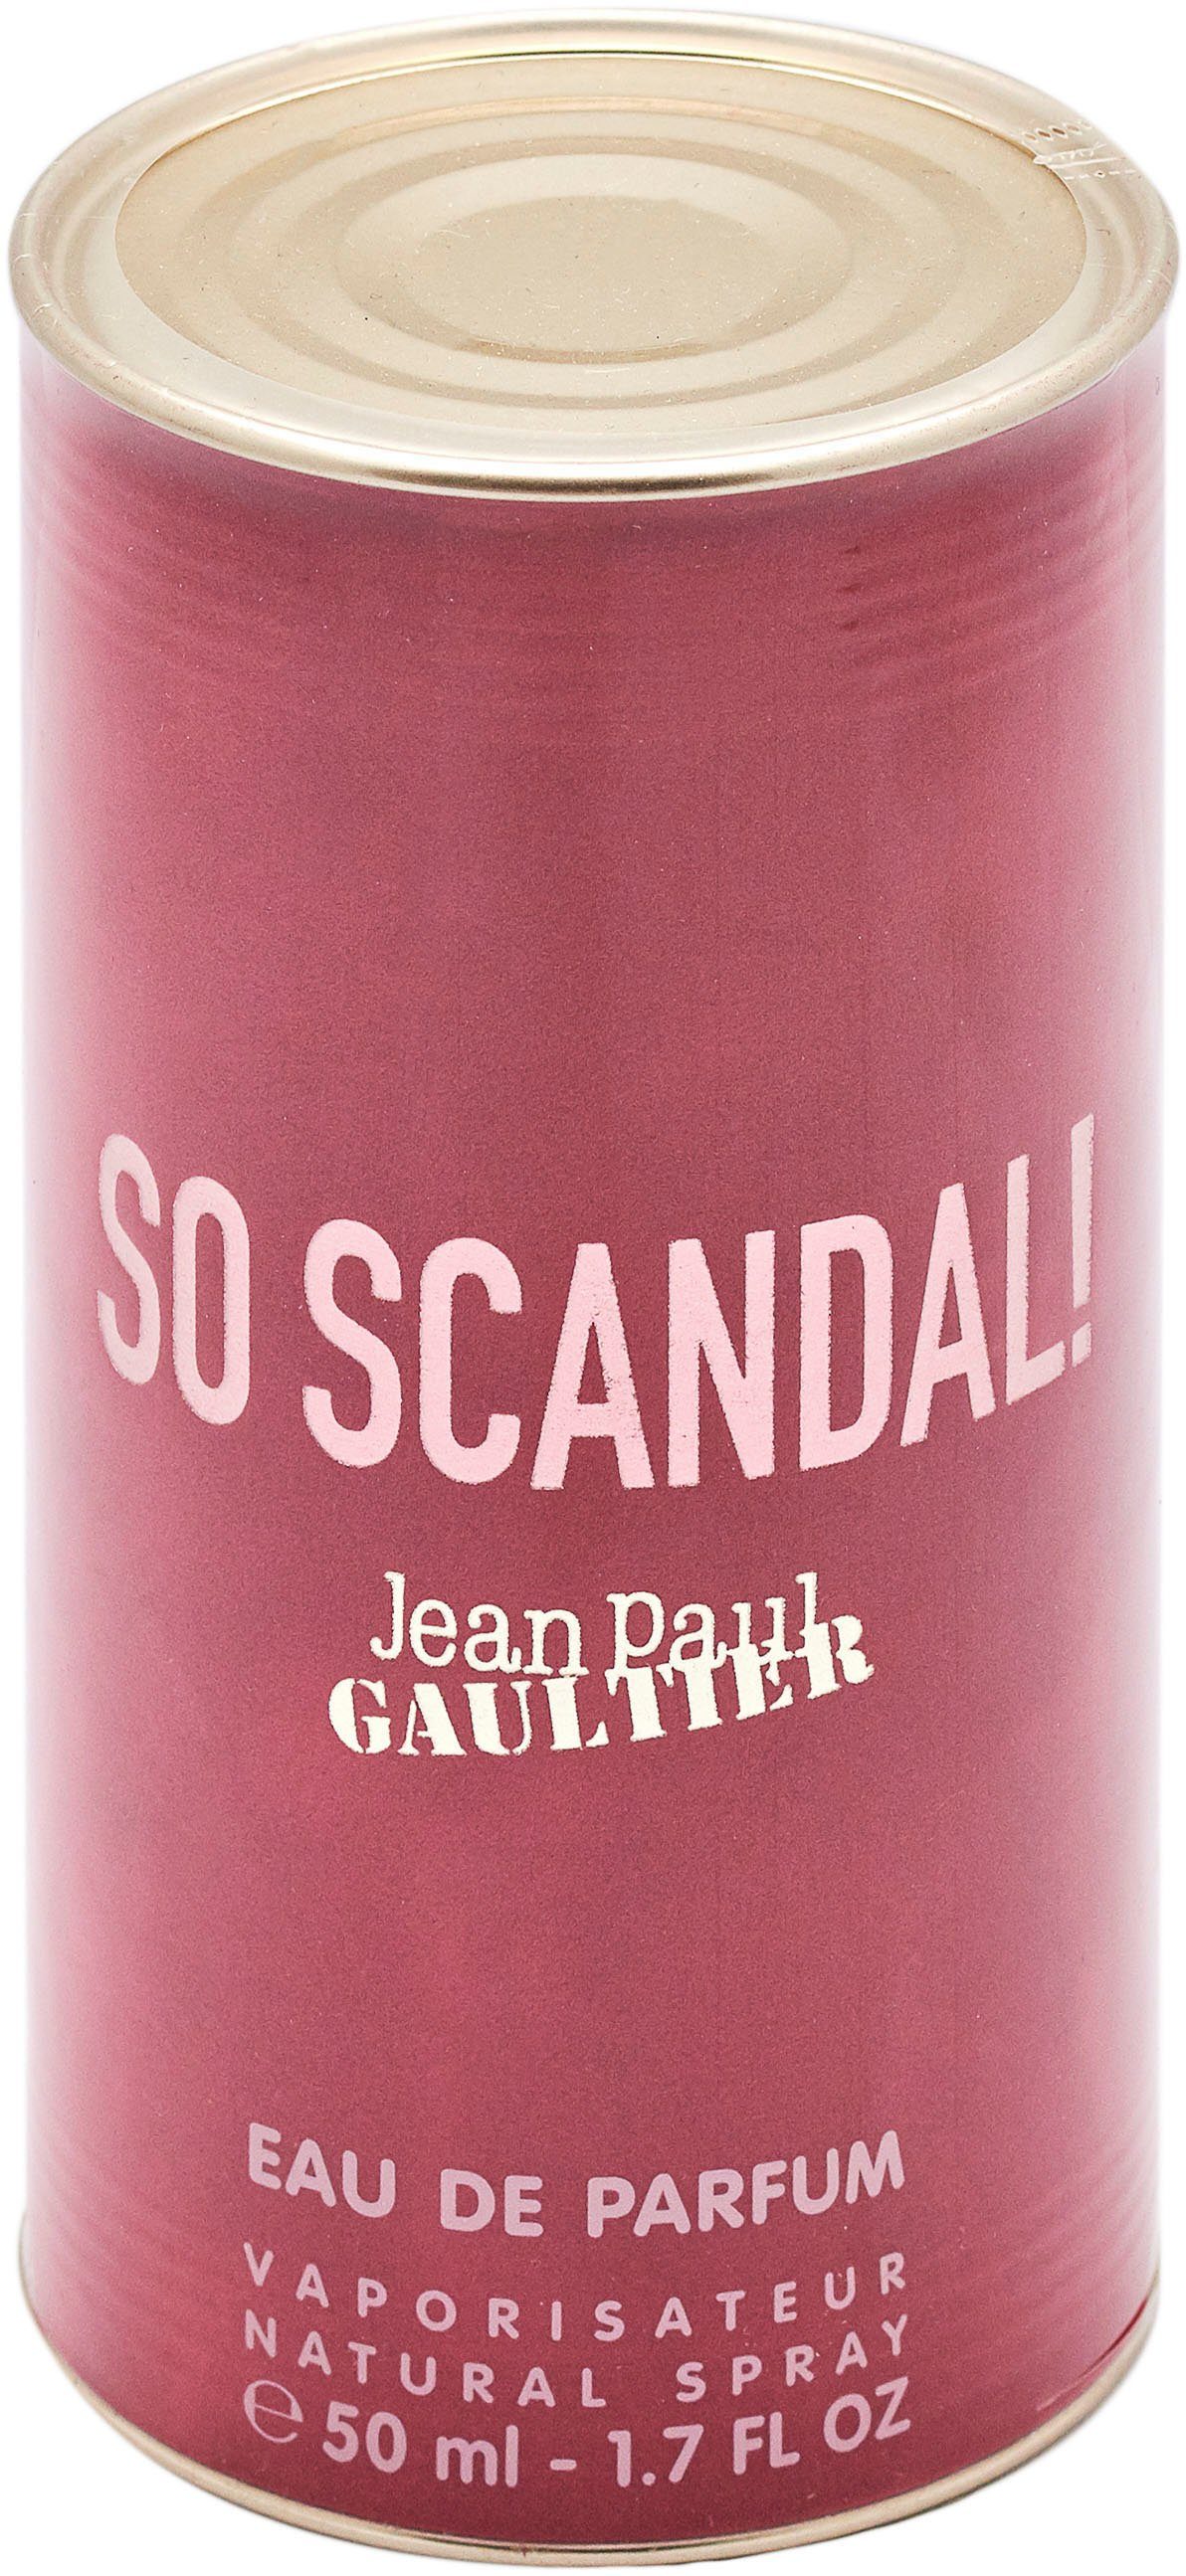 So GAULTIER Scandal! PAUL JEAN Parfum Eau de